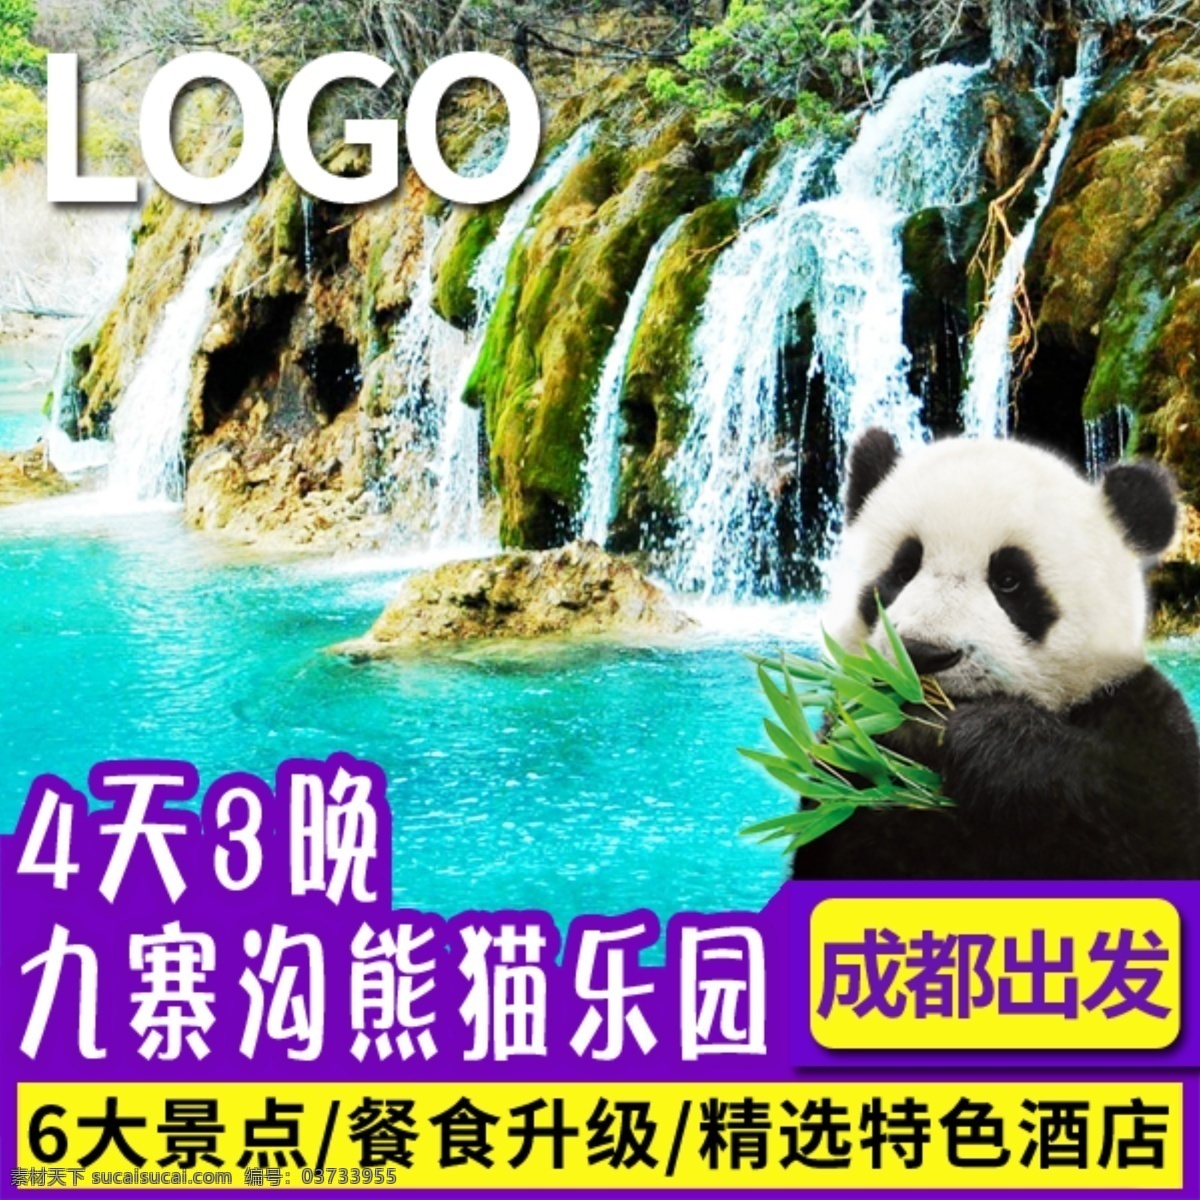 旅游首图模板 淘宝旅游 首图模板 九寨沟旅游 熊猫元素 紫色 黄色 色块